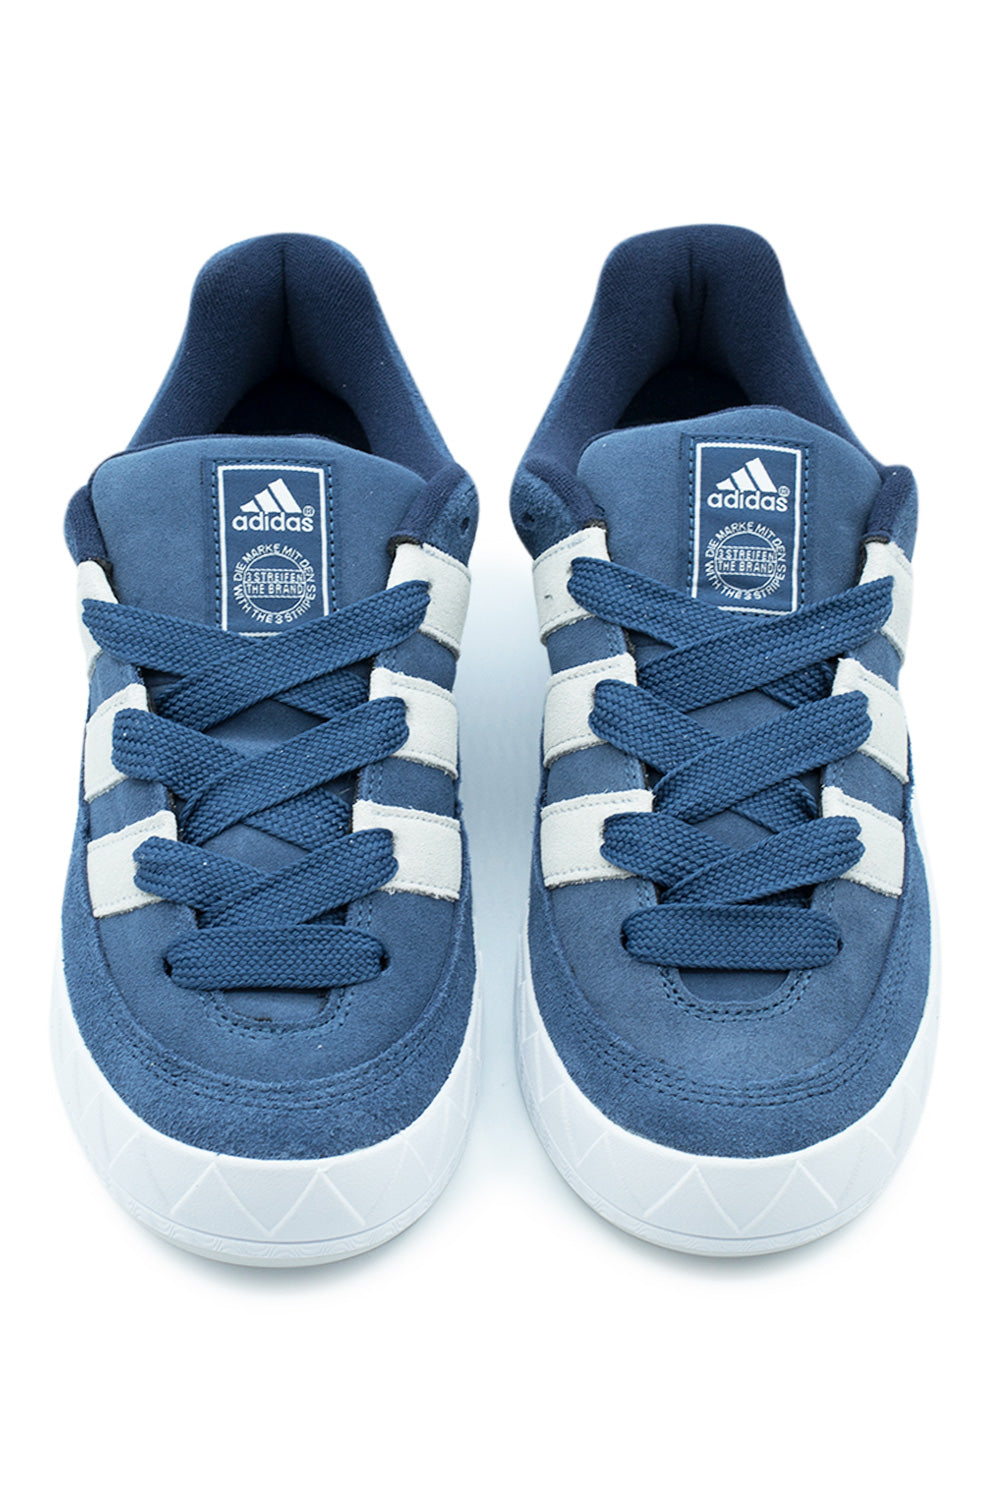 Adidas Adimatic Shoe Night Marine / Crystal White / Night Indigo